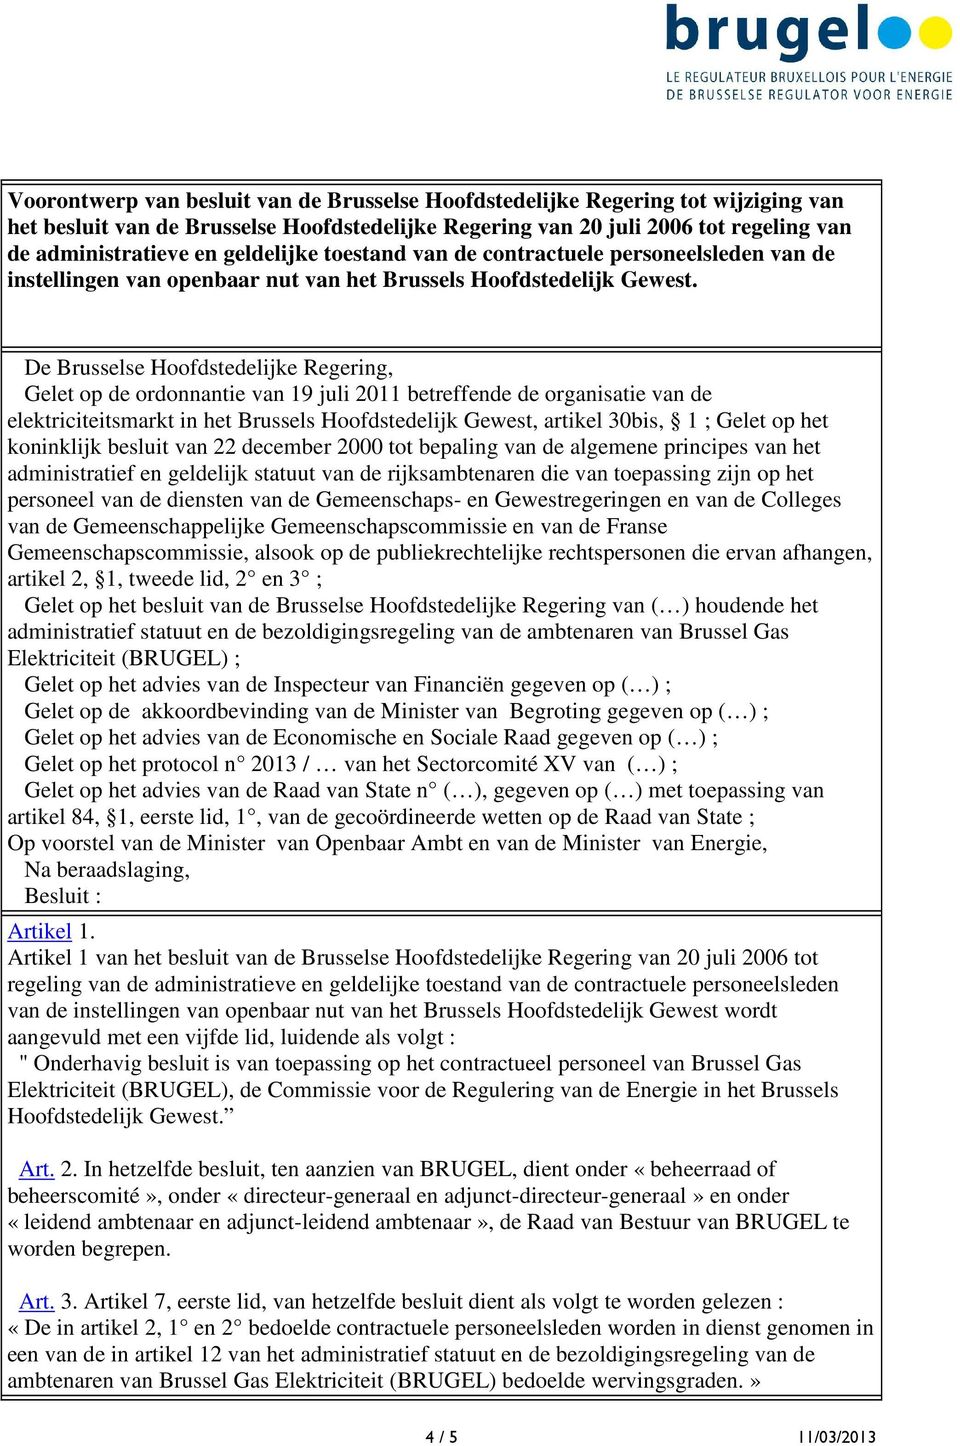 De Brusselse Hoofdstedelijke Regering, Gelet op de ordonnantie van 19 juli 2011 betreffende de organisatie van de elektriciteitsmarkt in het Brussels Hoofdstedelijk Gewest, artikel 30bis, 1 ; Gelet